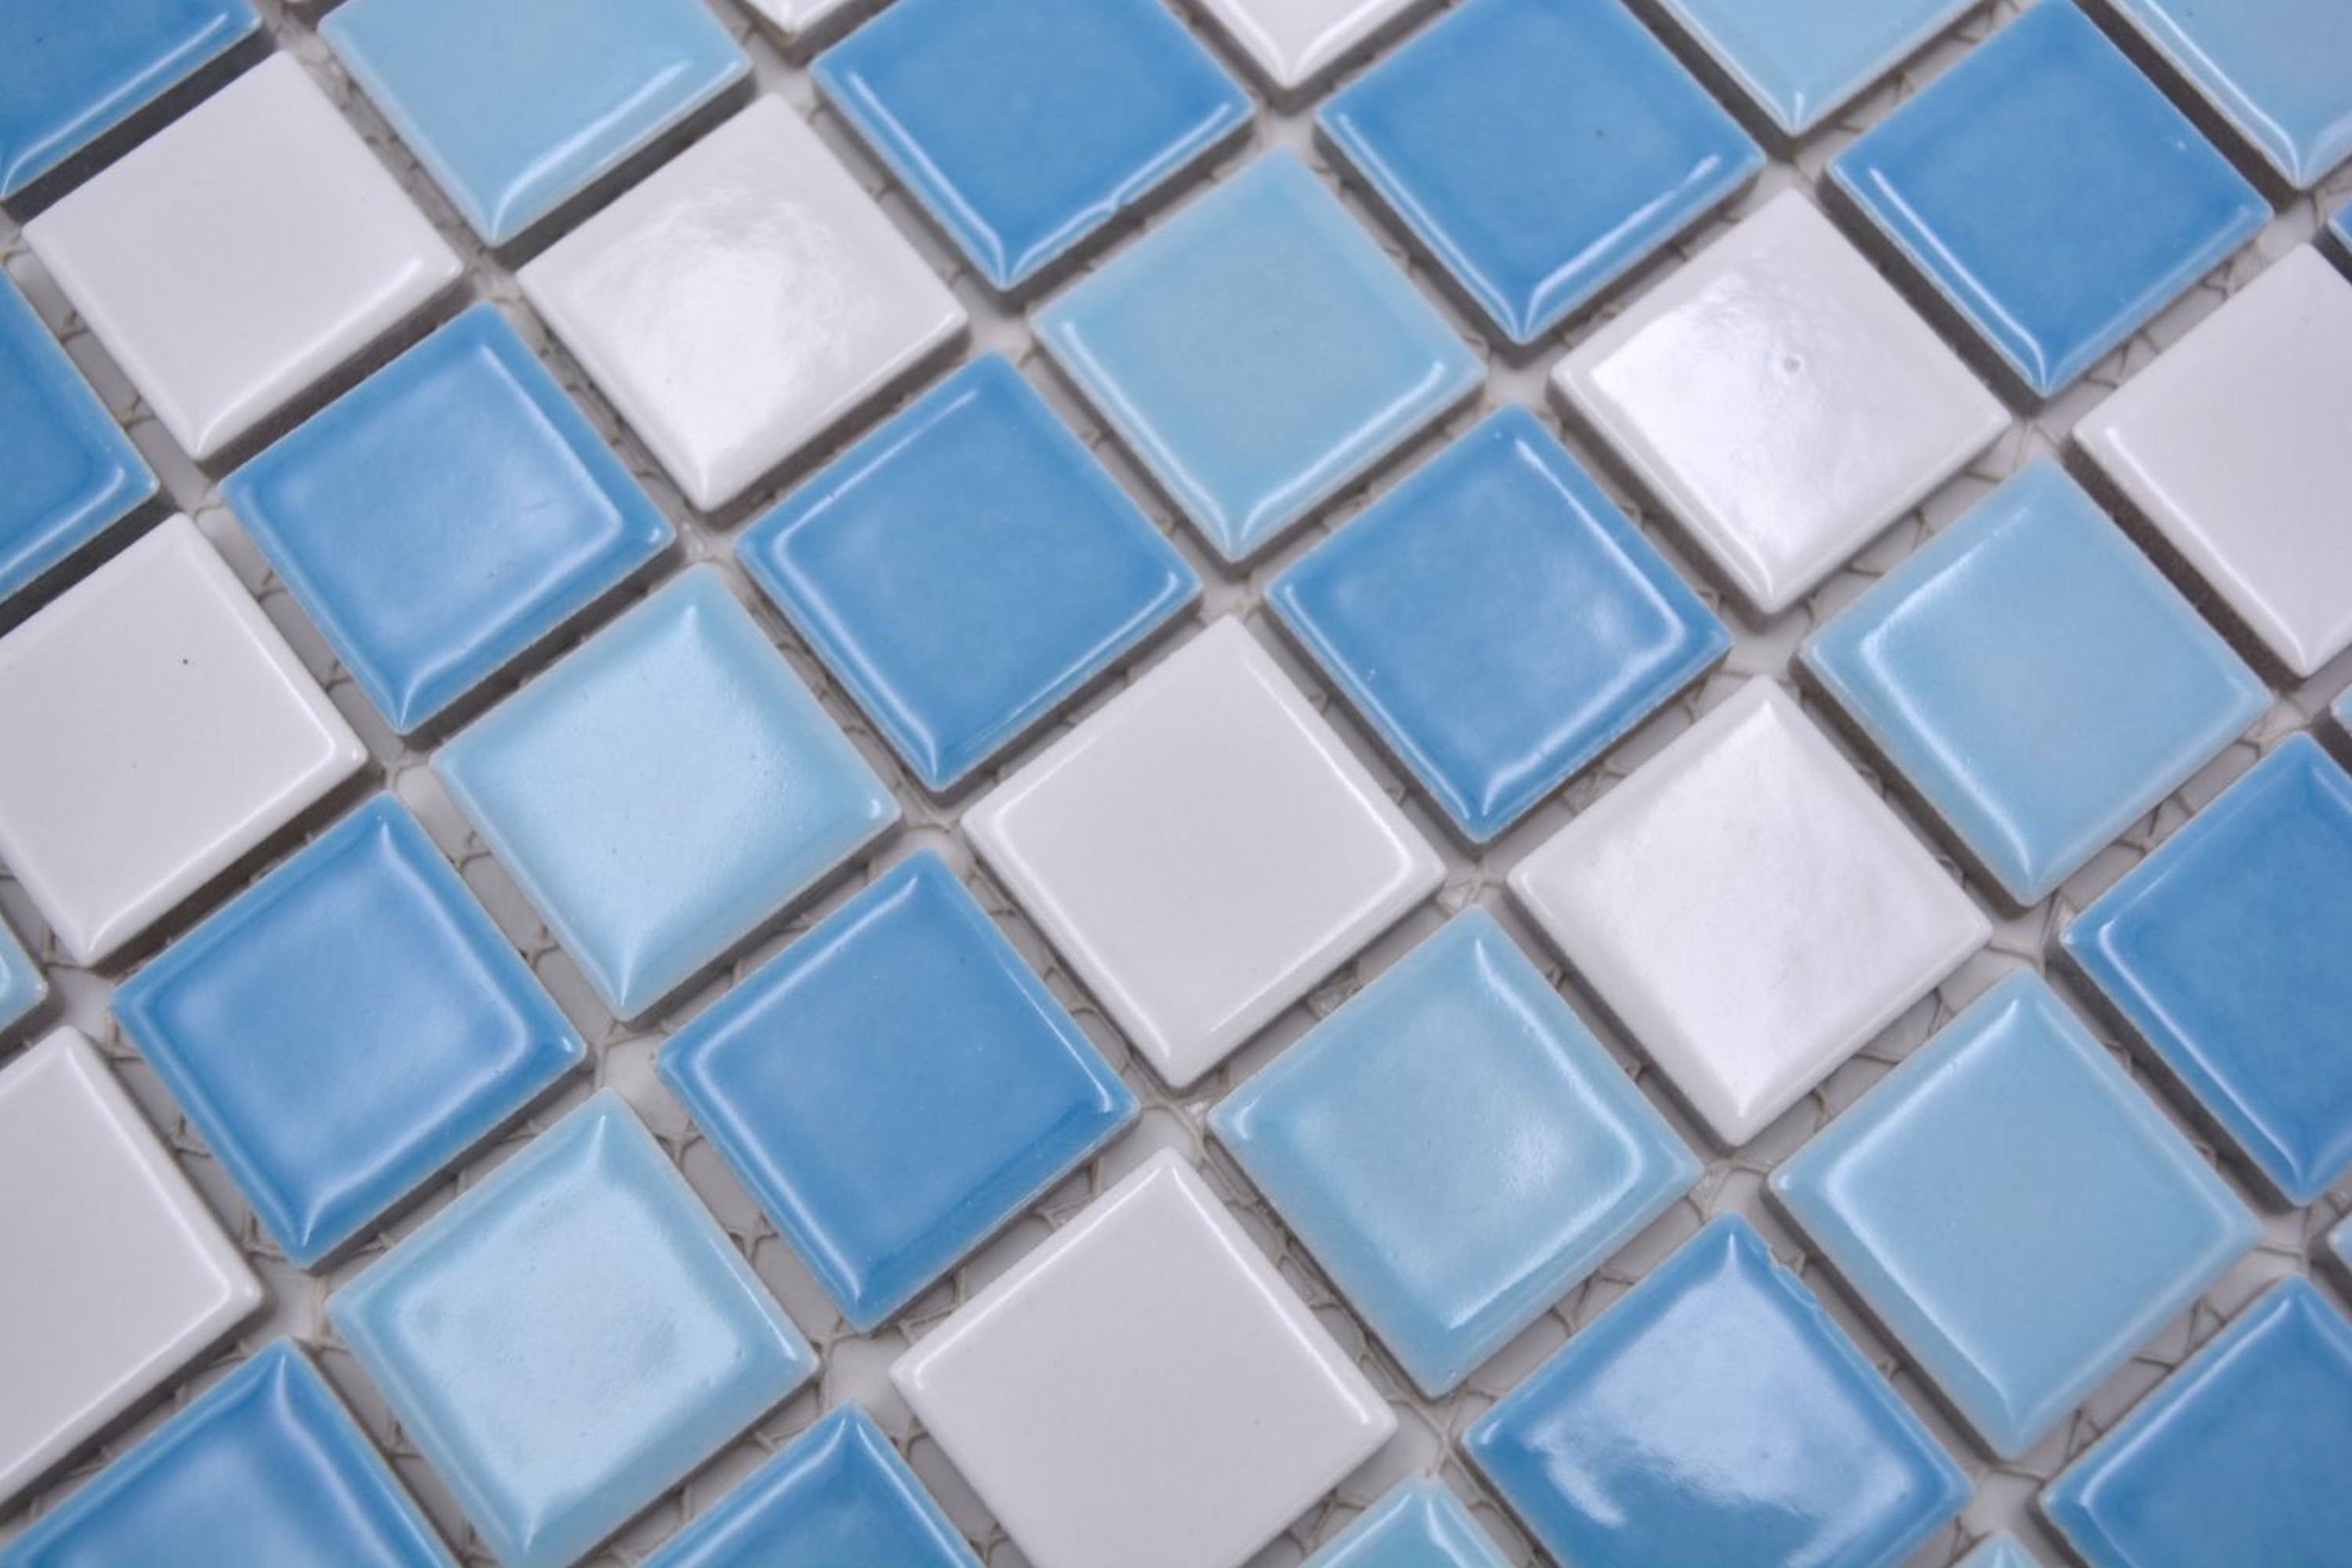 Schwimmbadmosaik Duschwand weiss Mosaik glänzend Keramik Mosaikfliesen blau Mosani Fliese